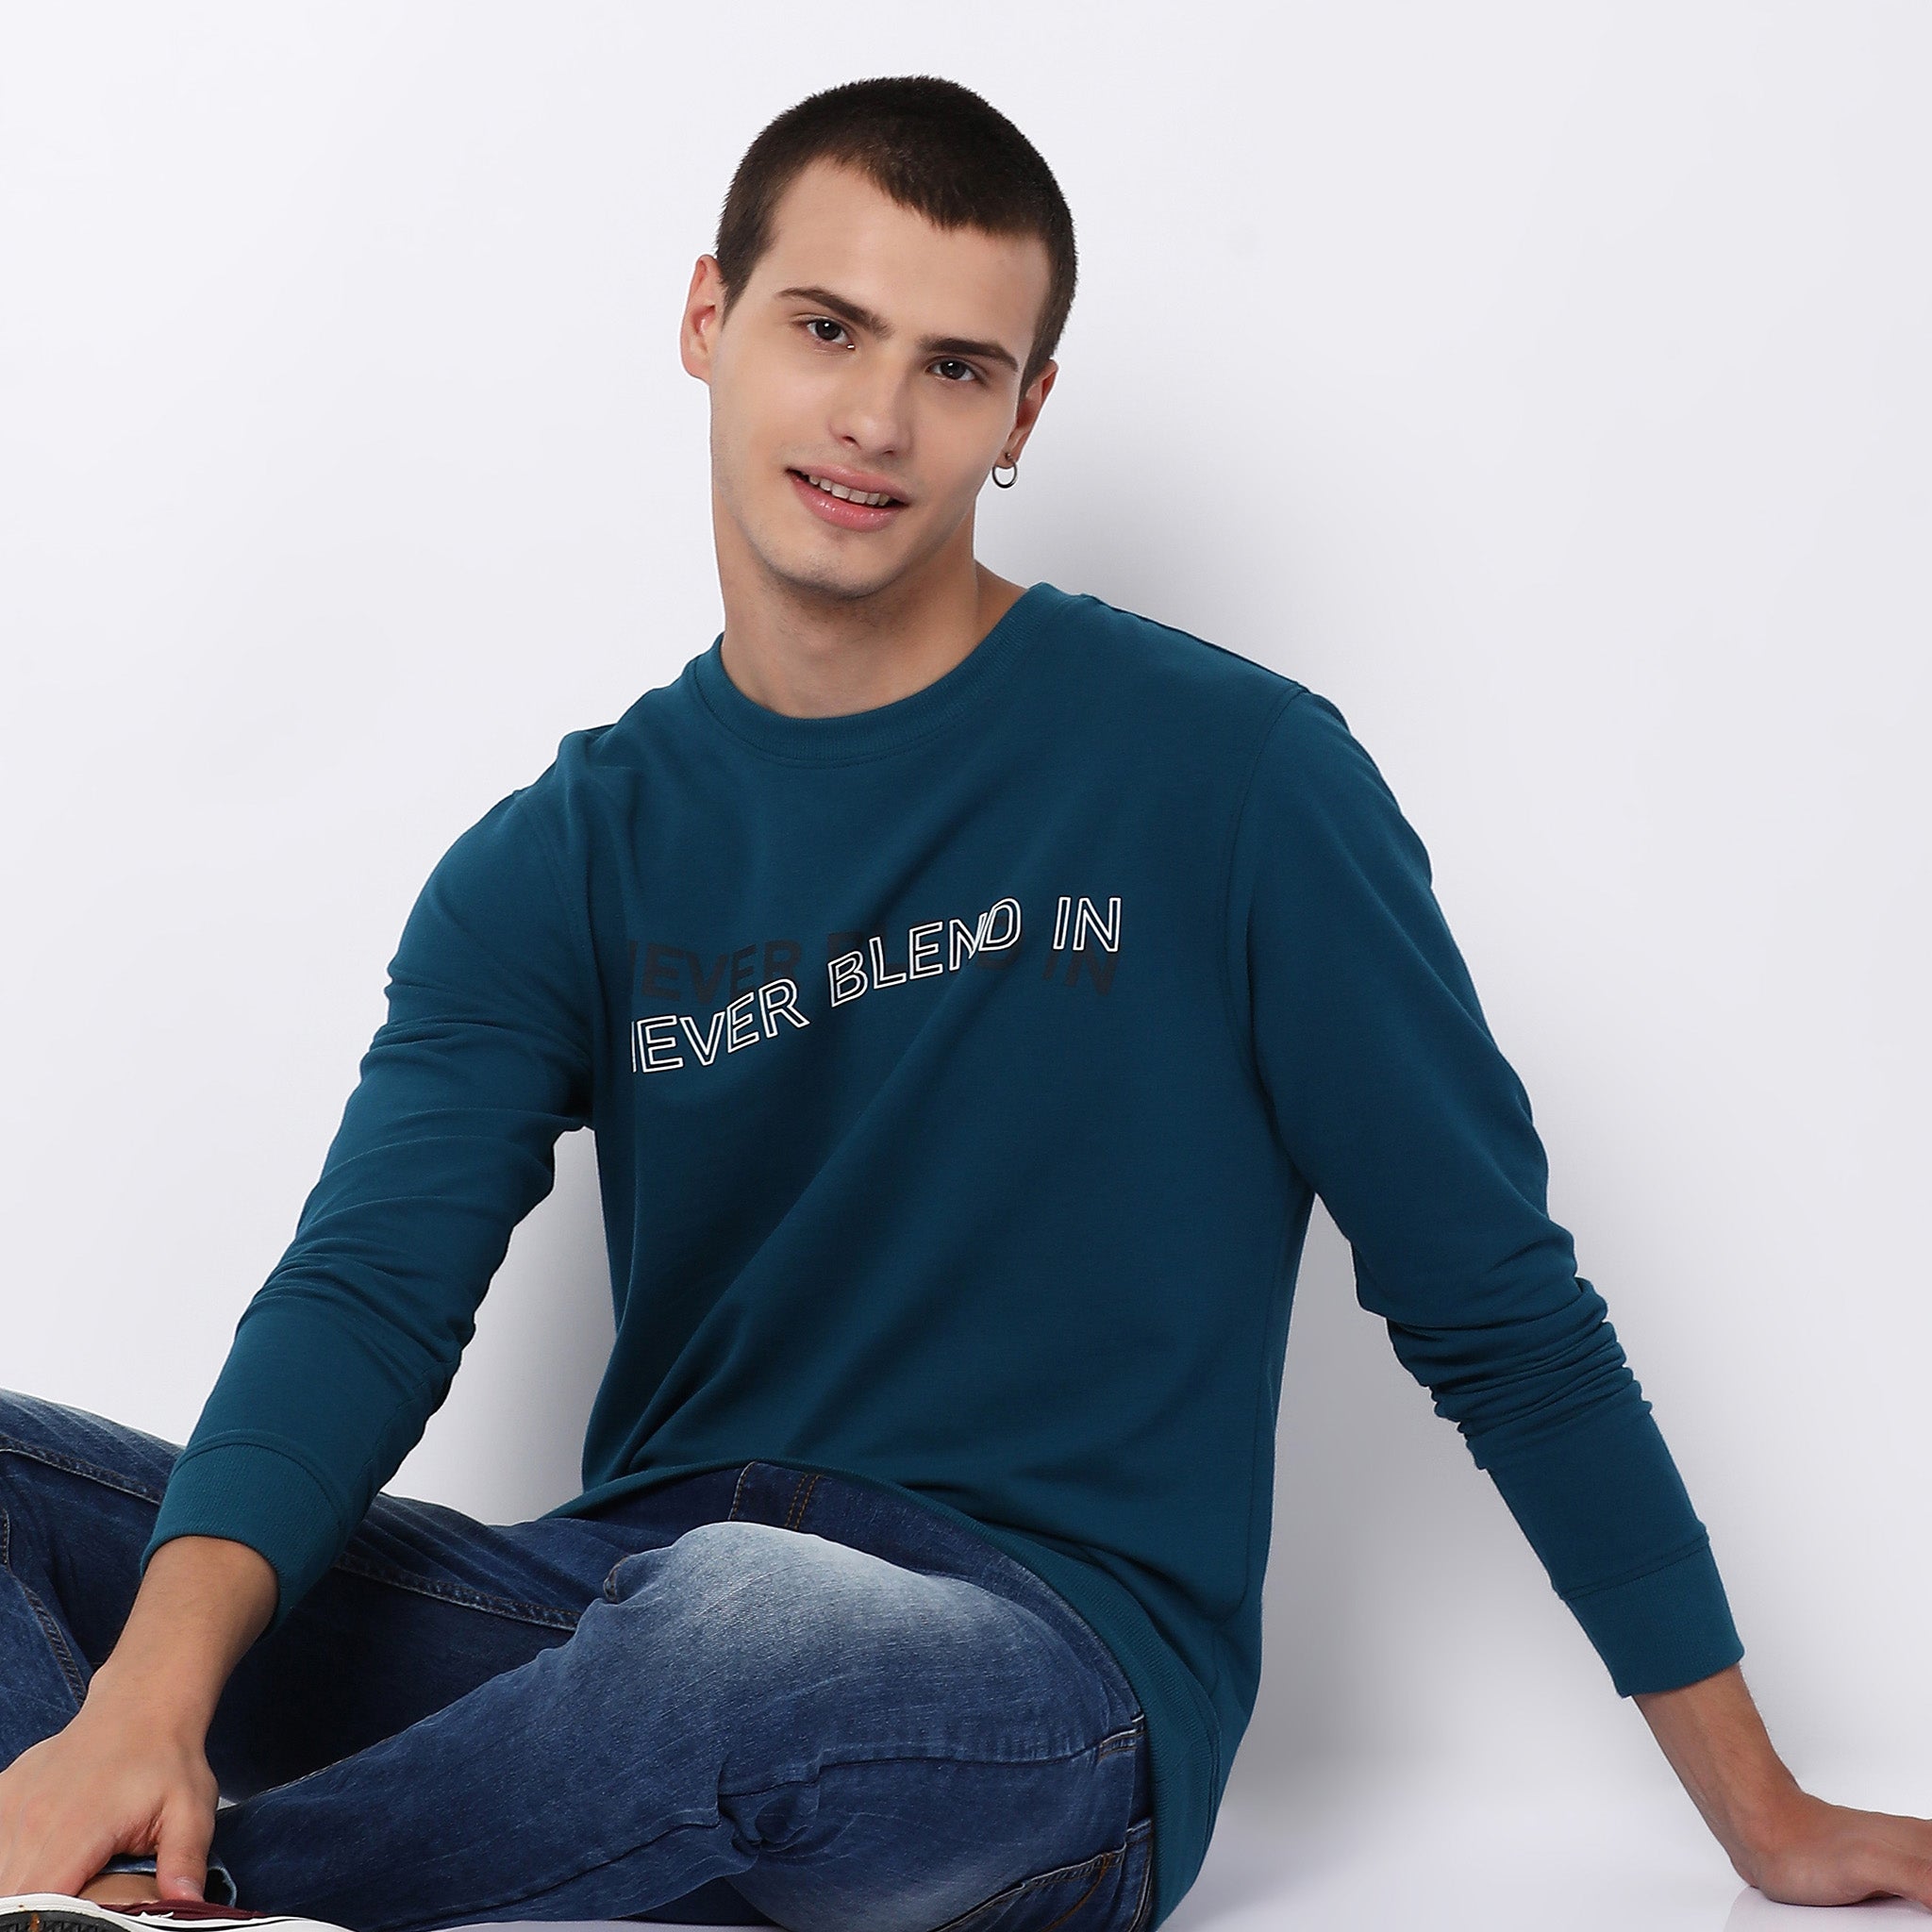 Sweatshirts For Men - Buy Mens Sweatshirts Online India